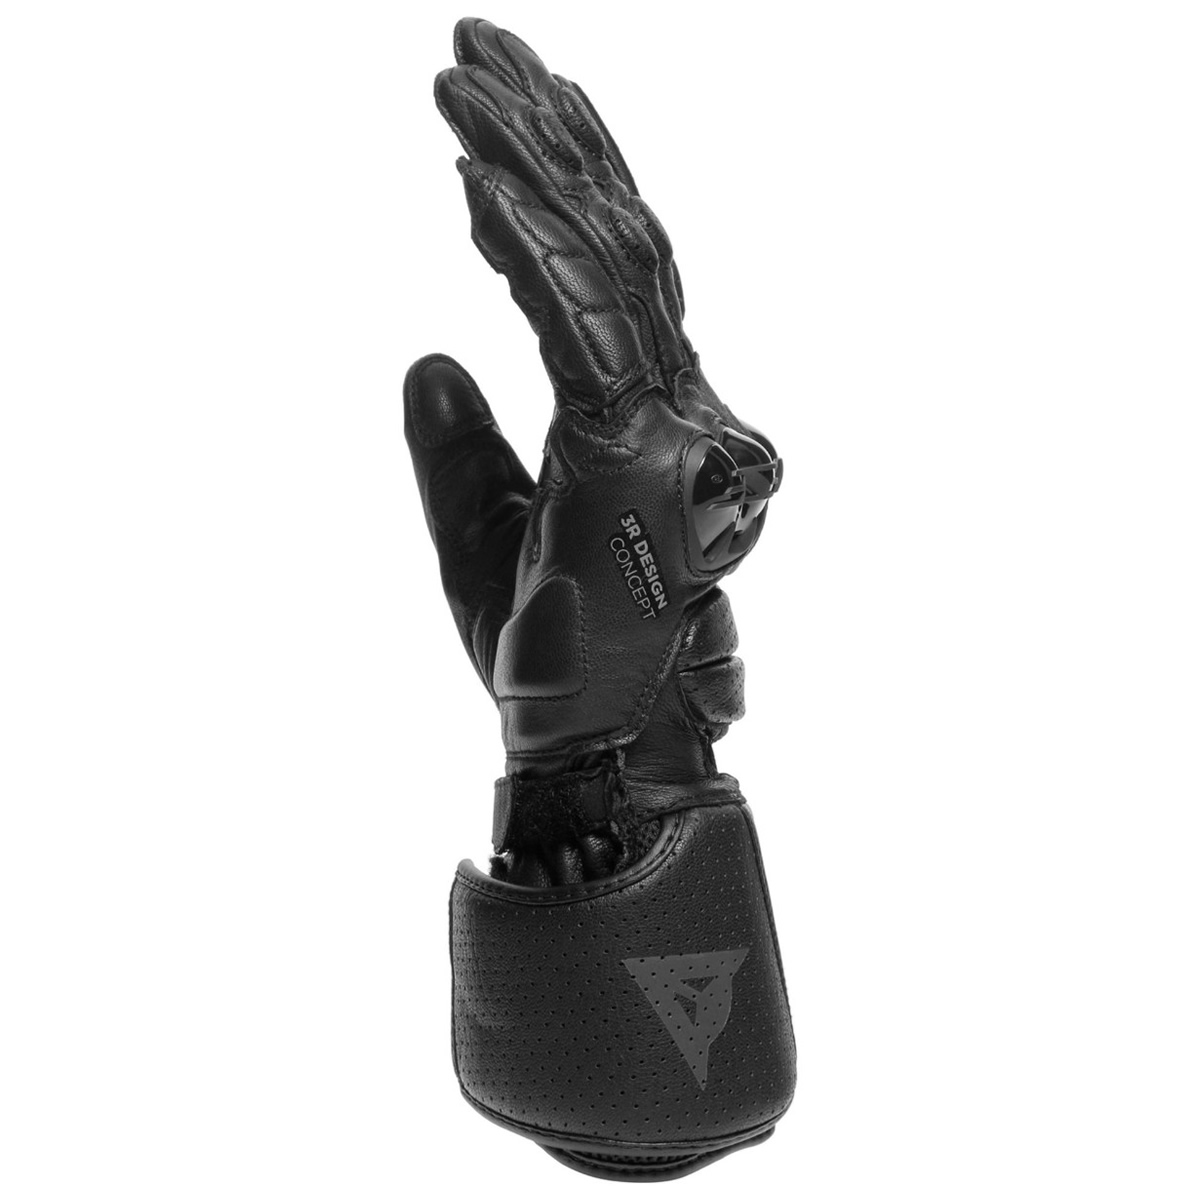 Dainese Handschuhe Impeto, schwarz